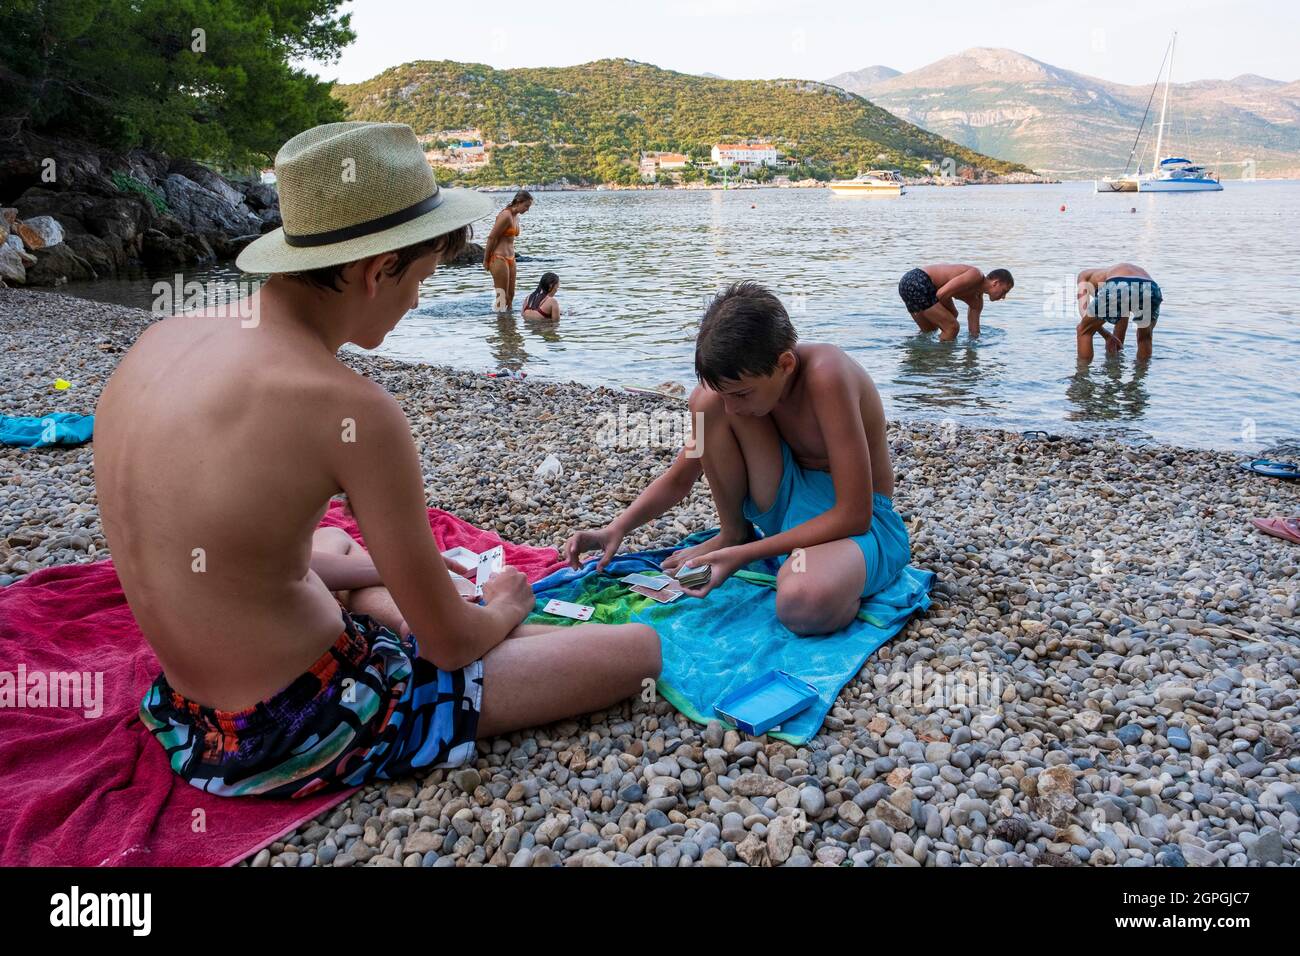 Croatia, Dalmatia, Elaphite Islands, Sipan Island, the port of Sudurad, card players on a pebble beach Stock Photo